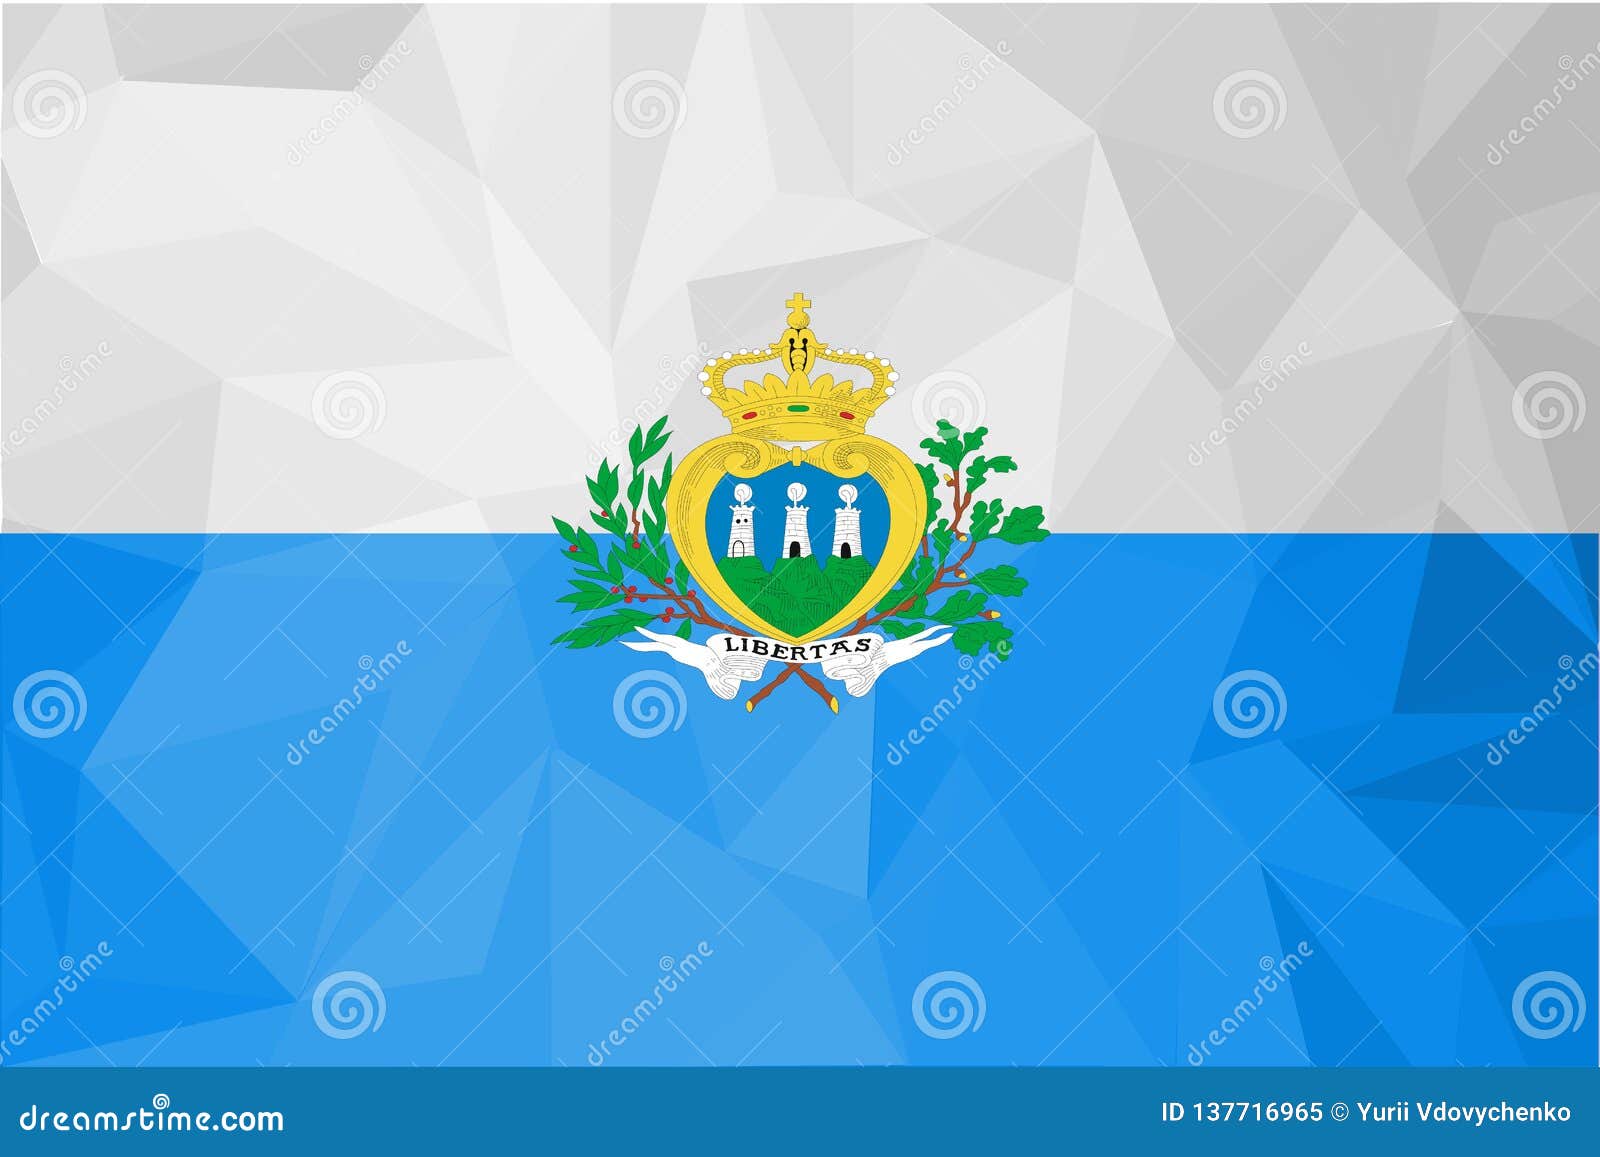 Сан марино сент китс прогноз. Флаг Сан Марино. Столица Сан-Марино флаг. Сан Марино флаг вектор. Сан Марино флаг и герб.